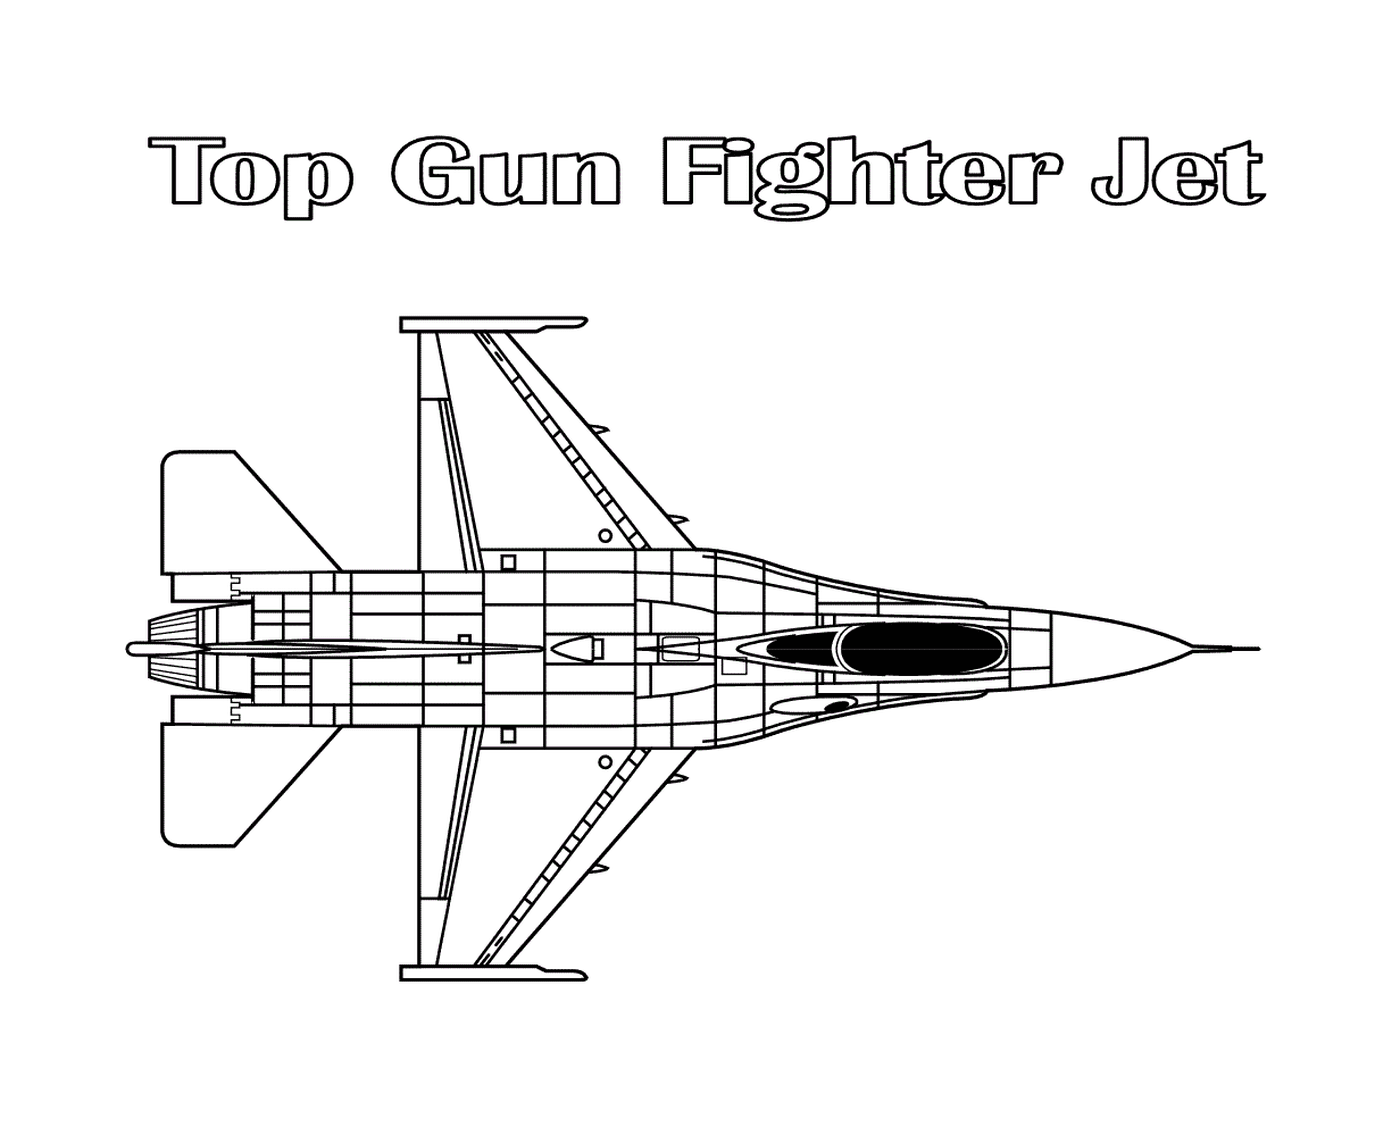   Un avion de chasse Top Gun 